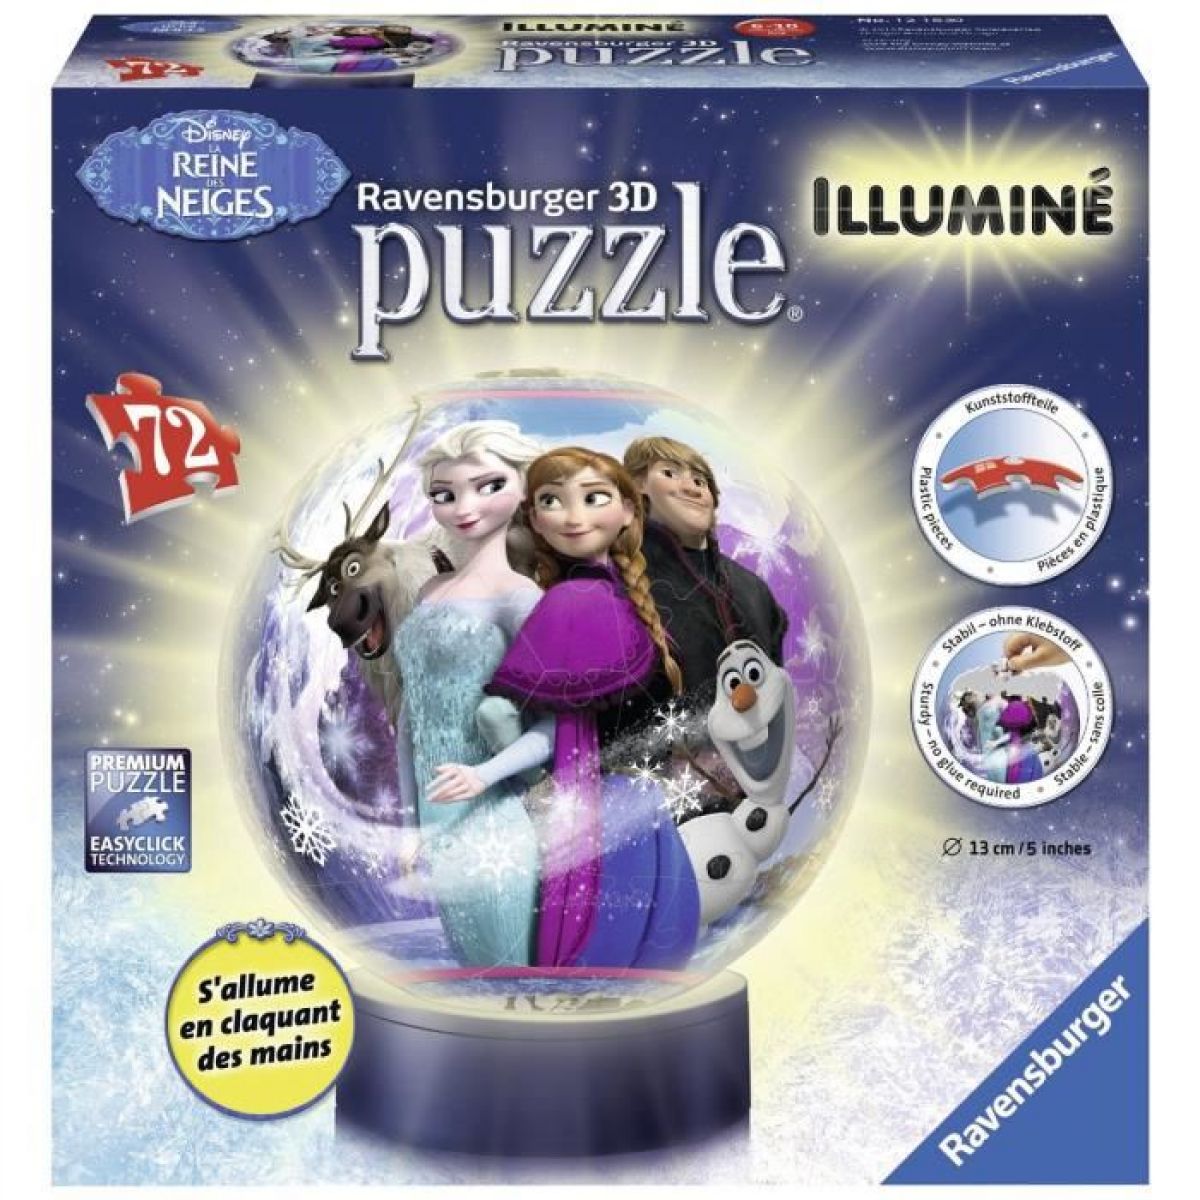 Ravensburger Ledové království Puzzleball svítící 72 dílků